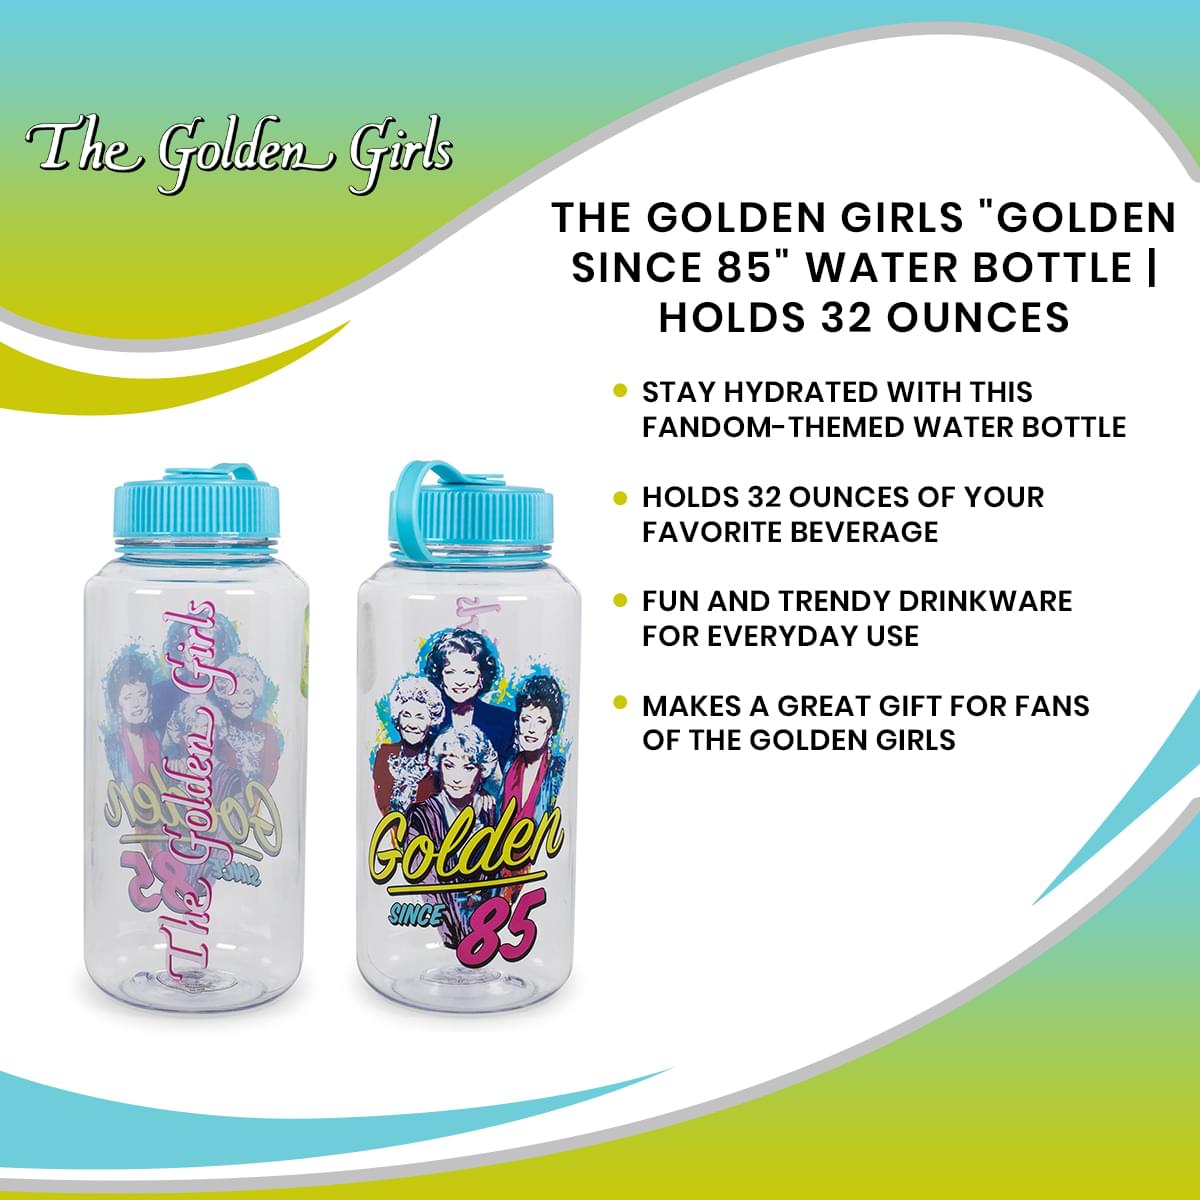 Golden Girls Golden Since 85 Water Bottle